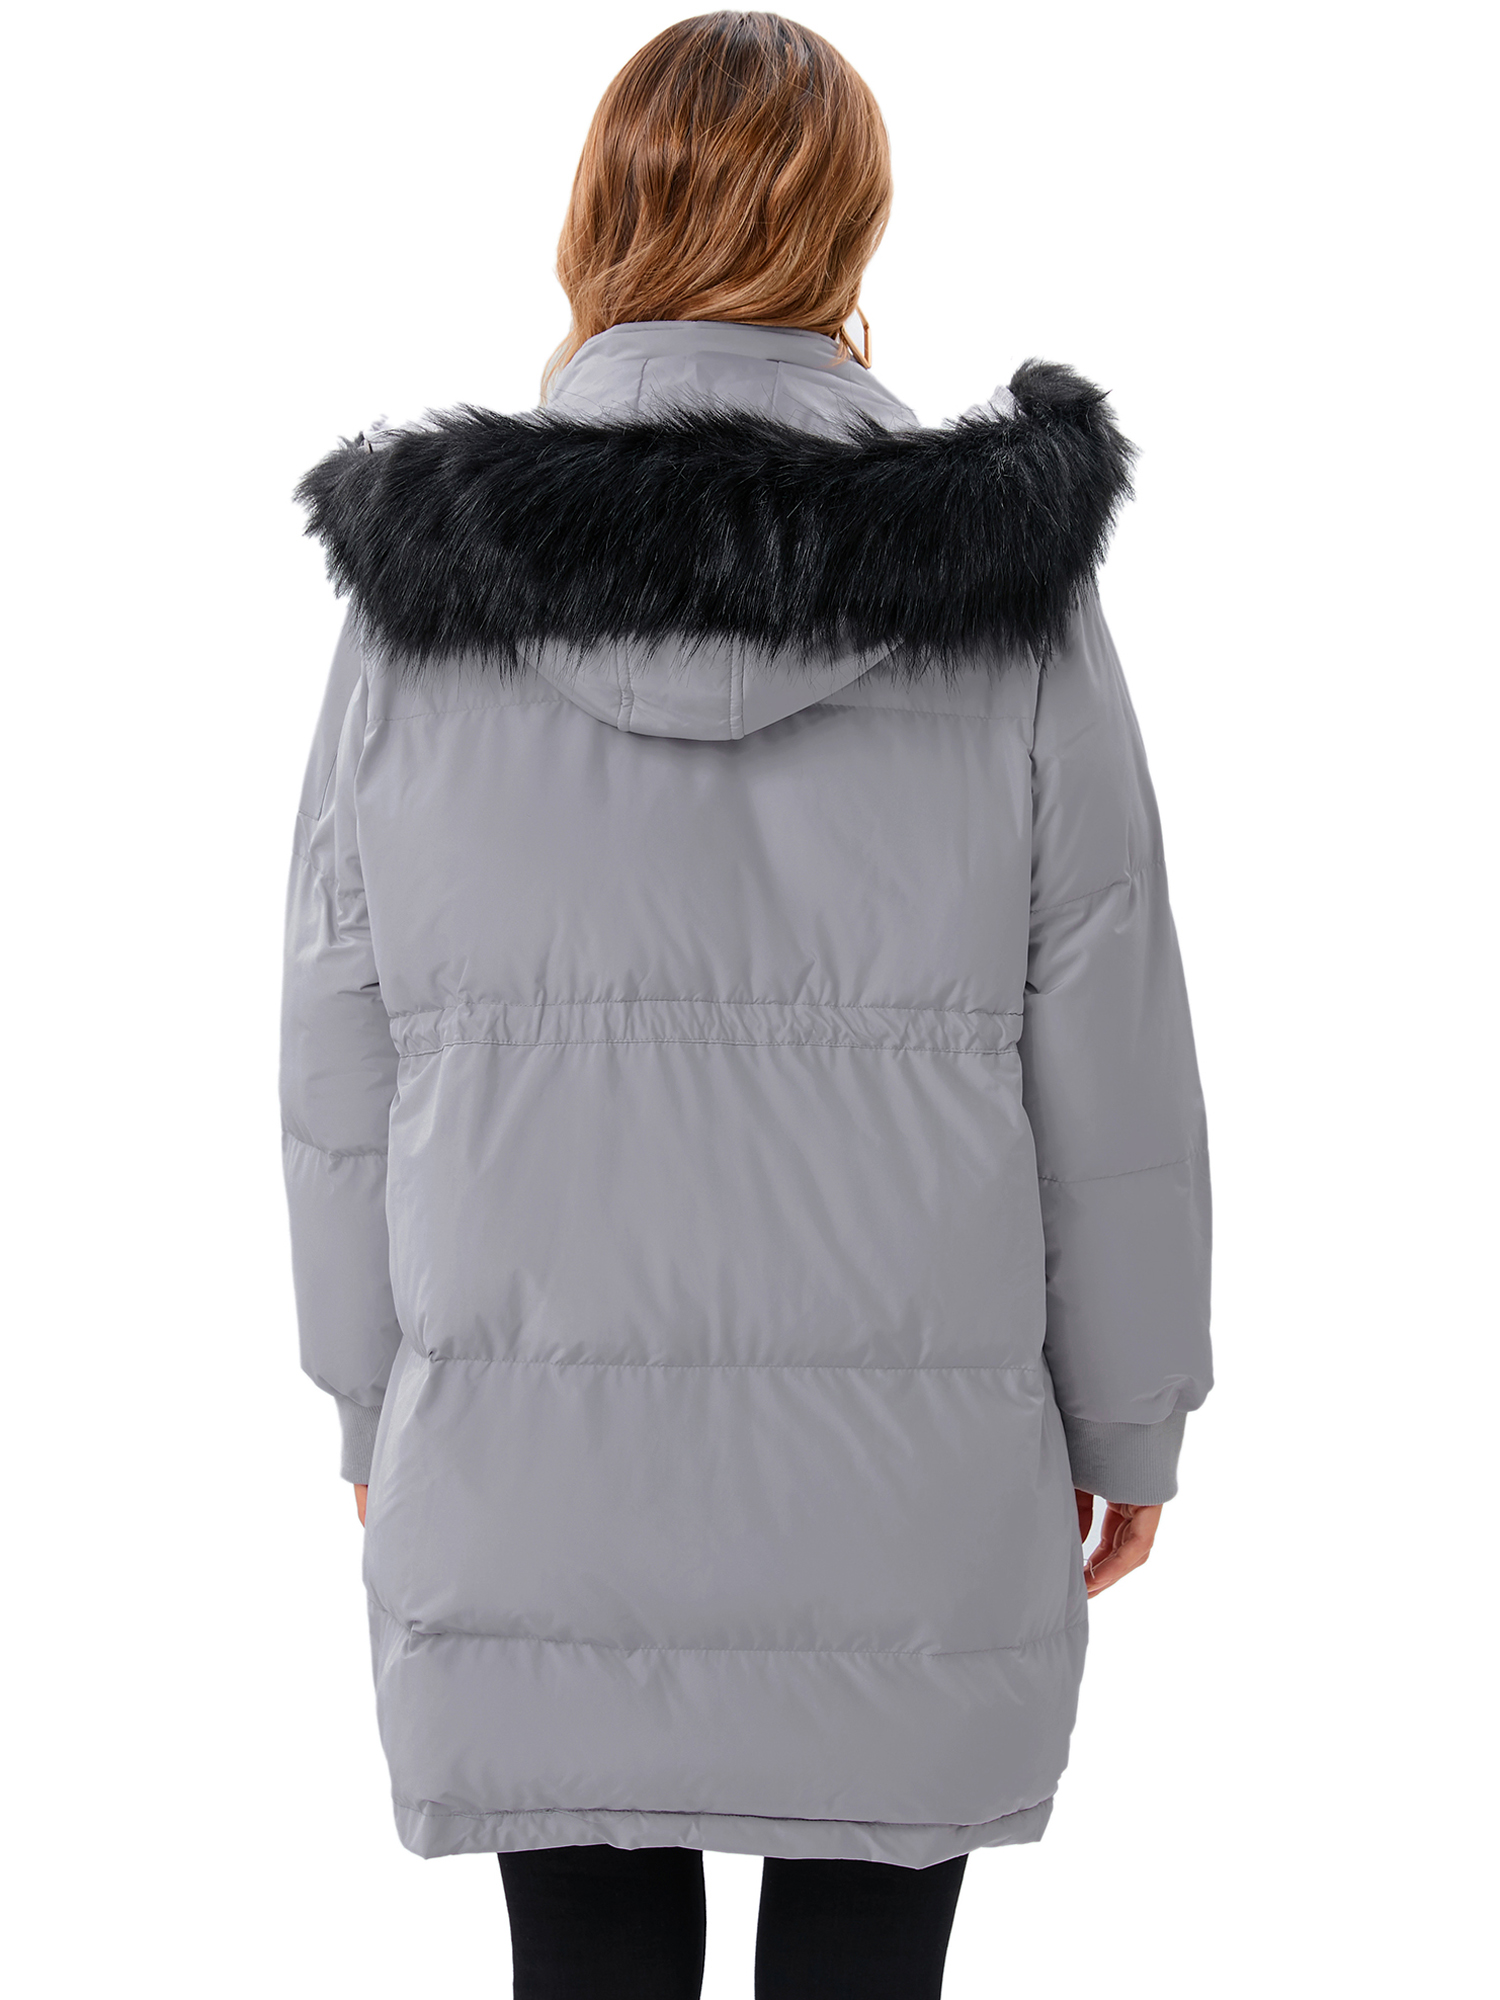 LELINTA Women's Heayweight Winter Warm Puffer Jacket Waterproof Rain Zip Parka Overcoats Jacket With Faux Fur Hooded - image 4 of 7